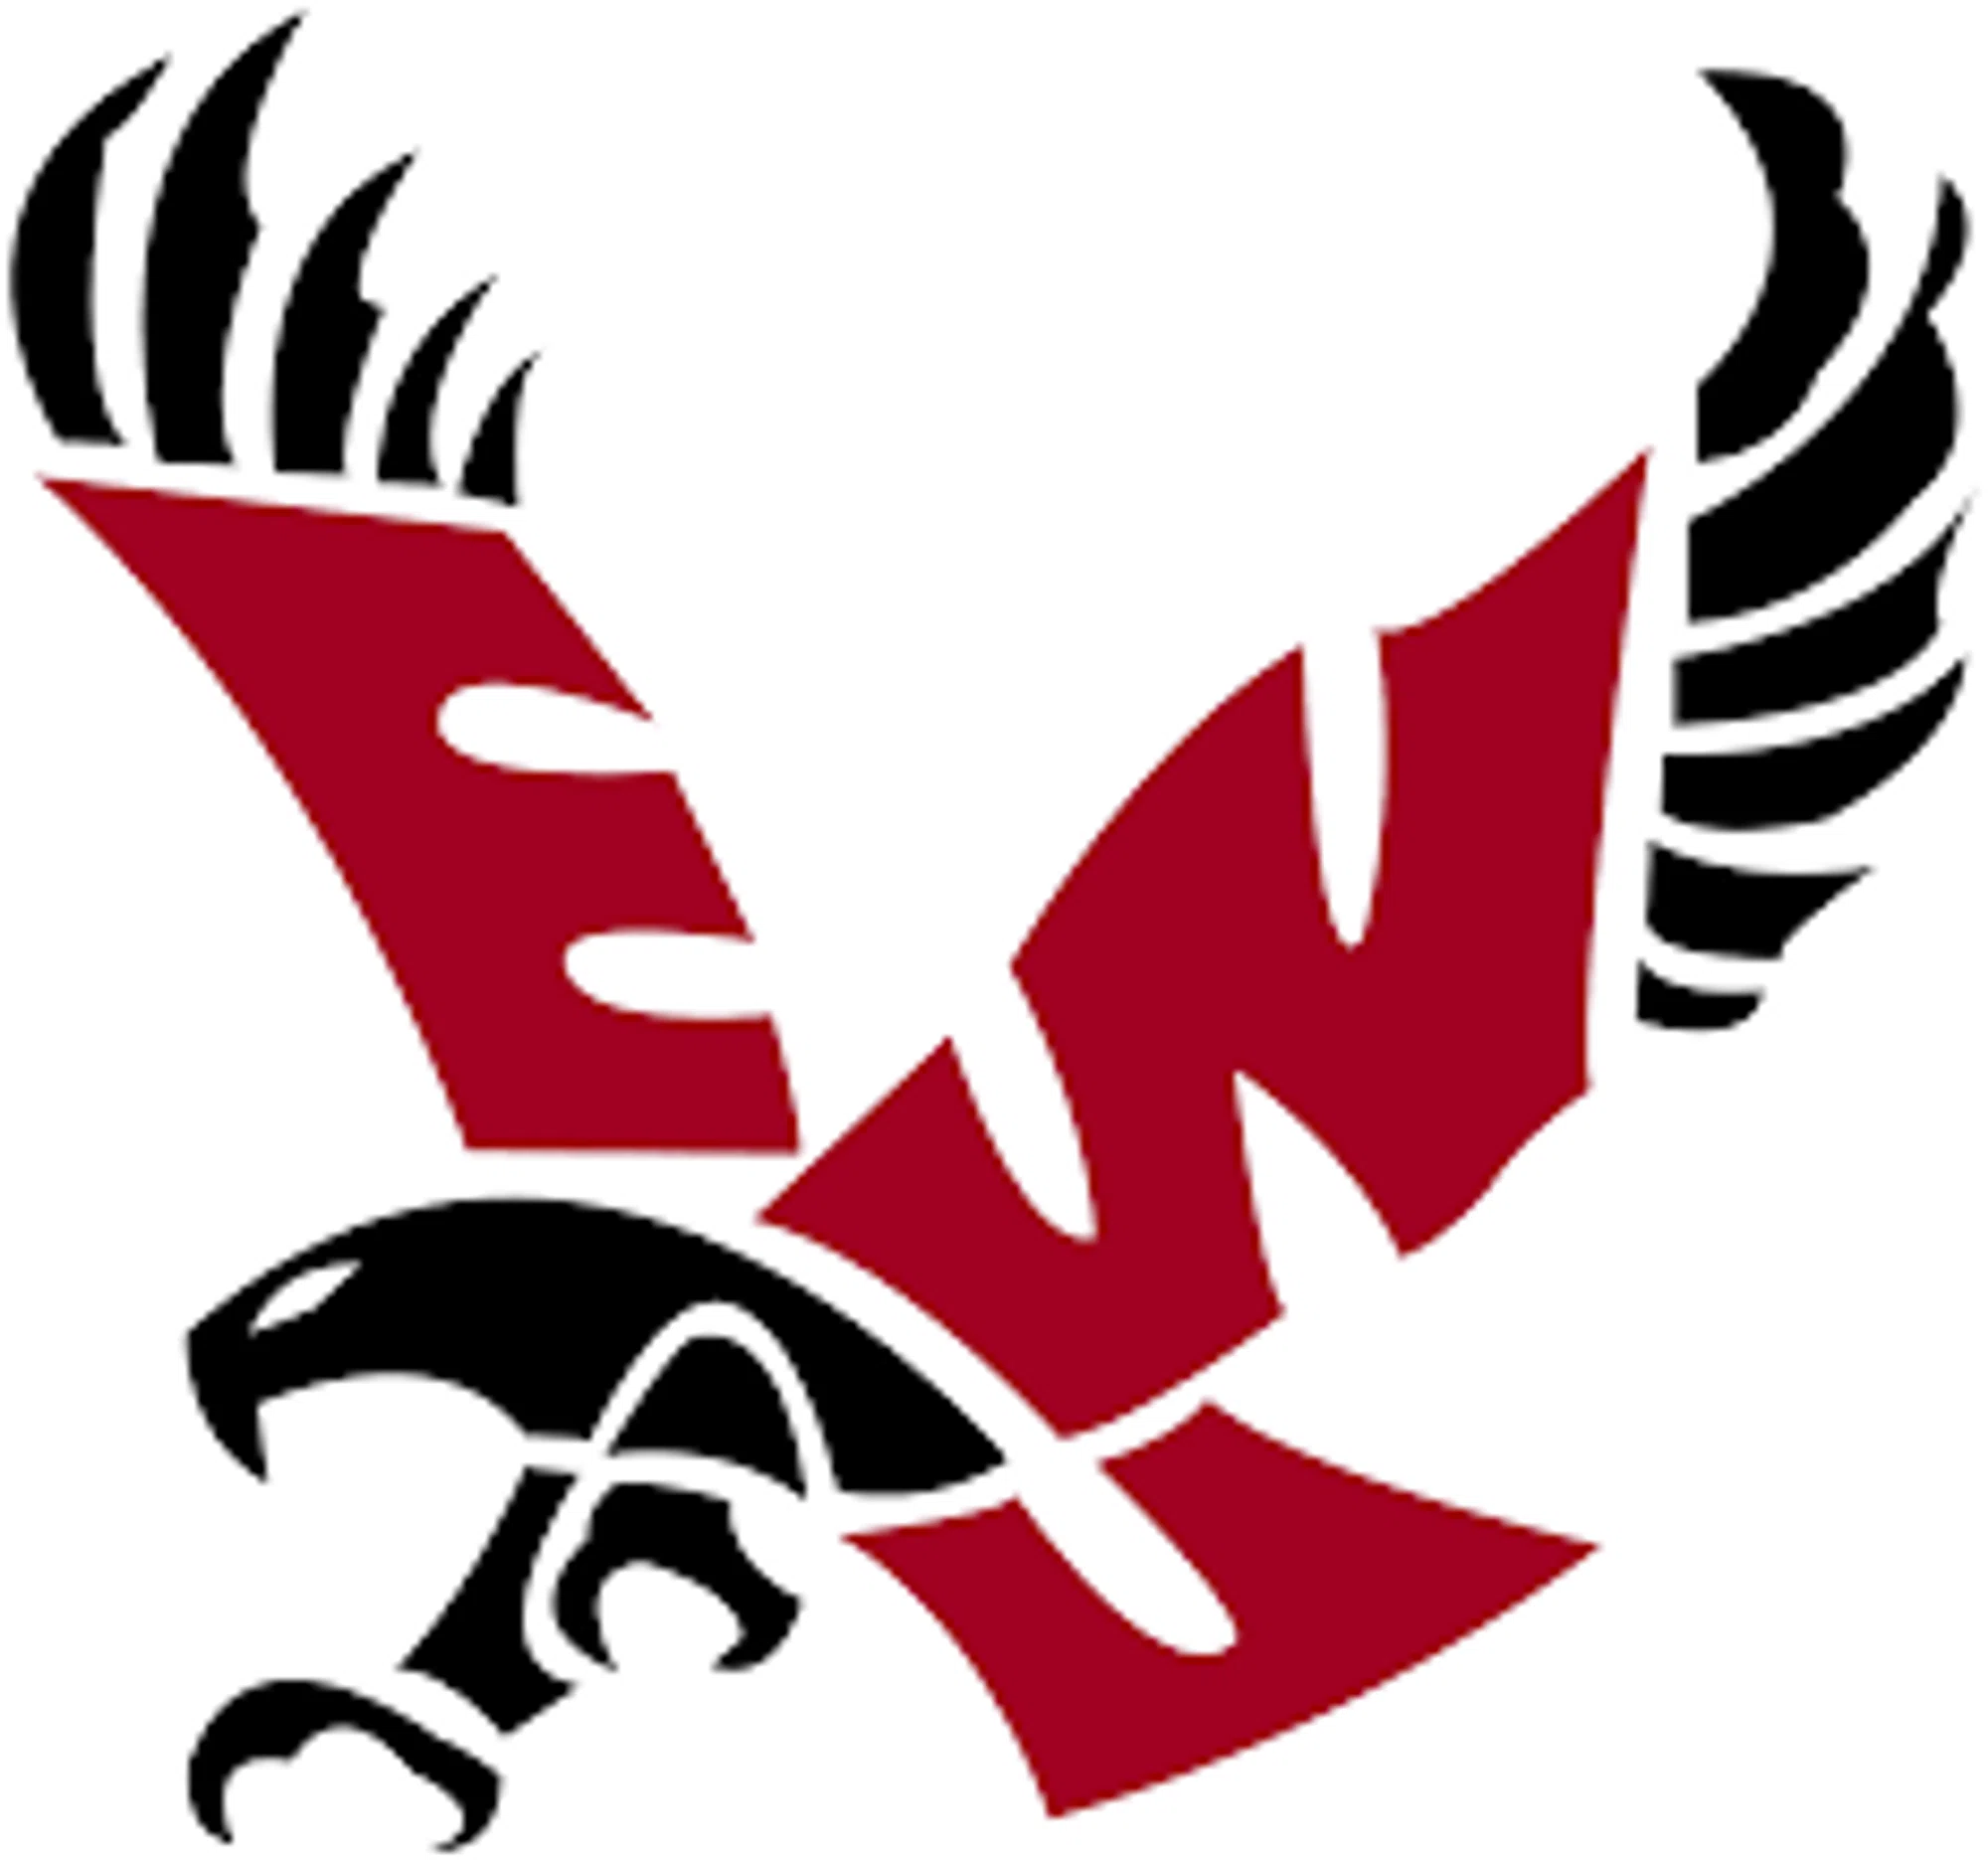 Eastern Washington Eagles